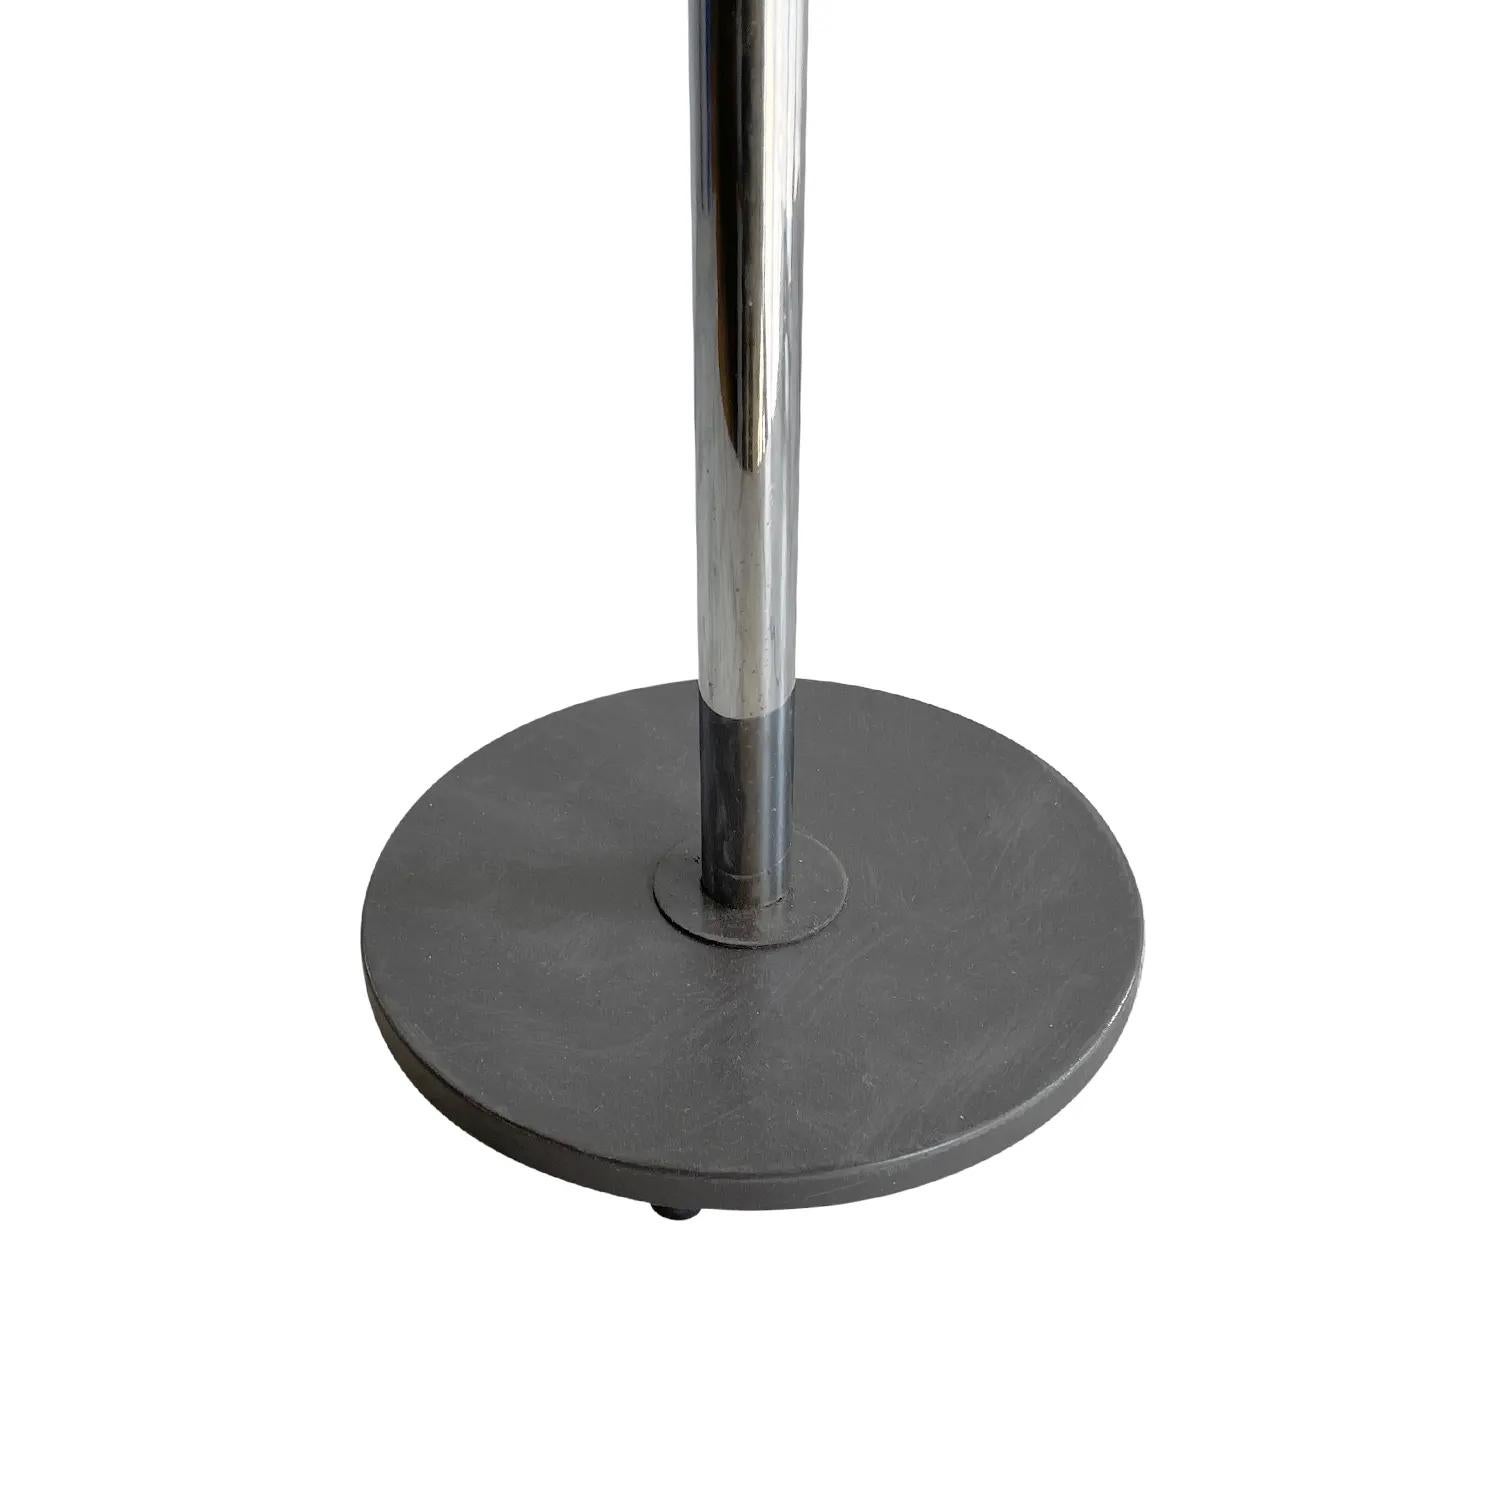 20th Century Swedish Chrome Table Lamp, Scandinavian Desk Light by Falkenberg For Sale 1